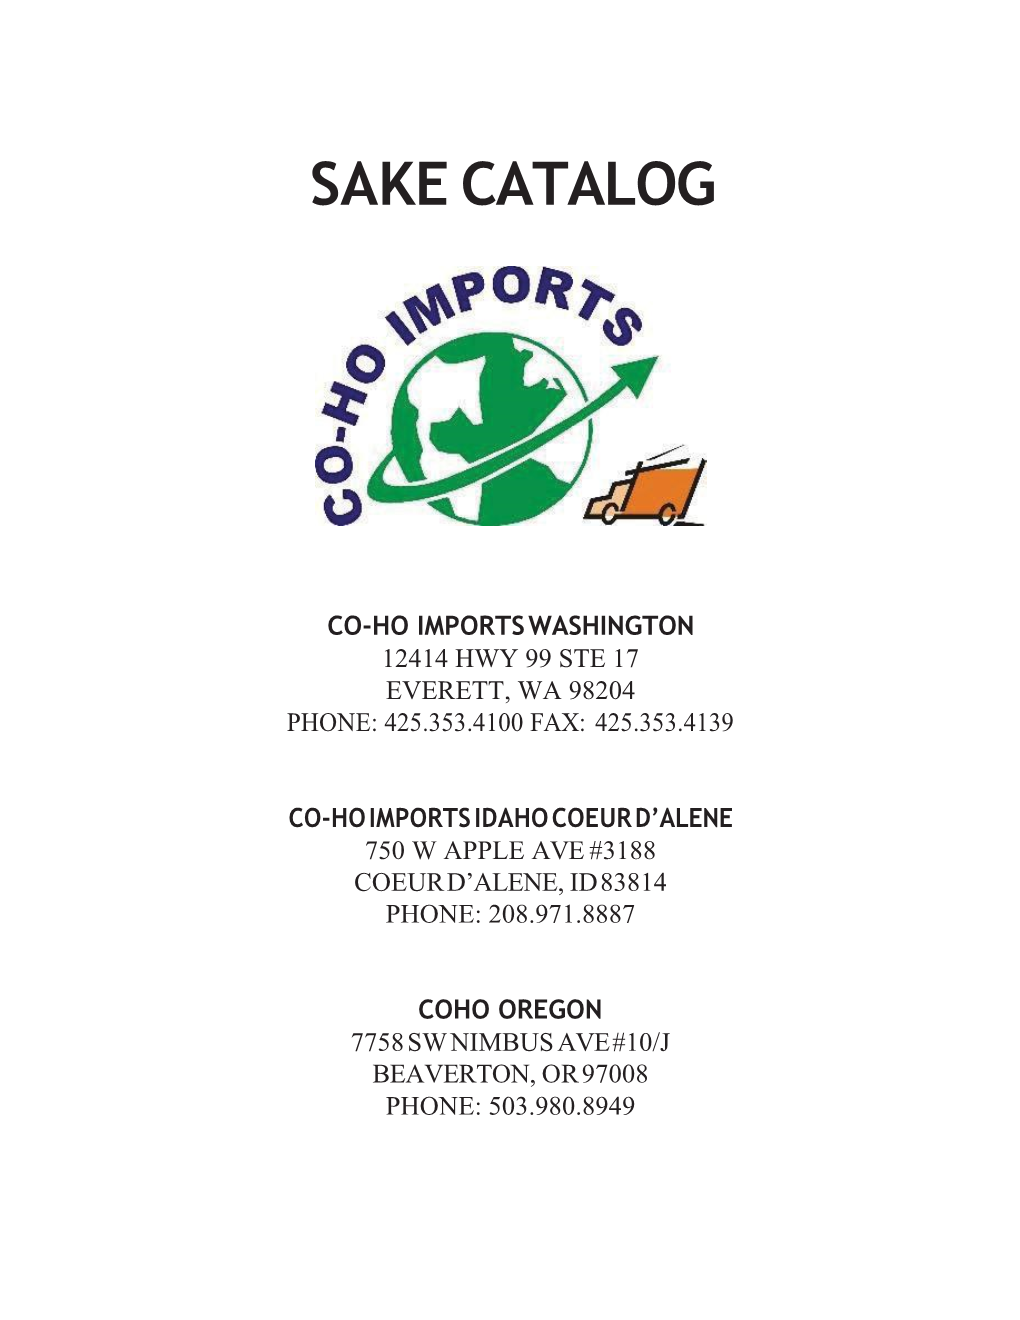 Sake Catalog